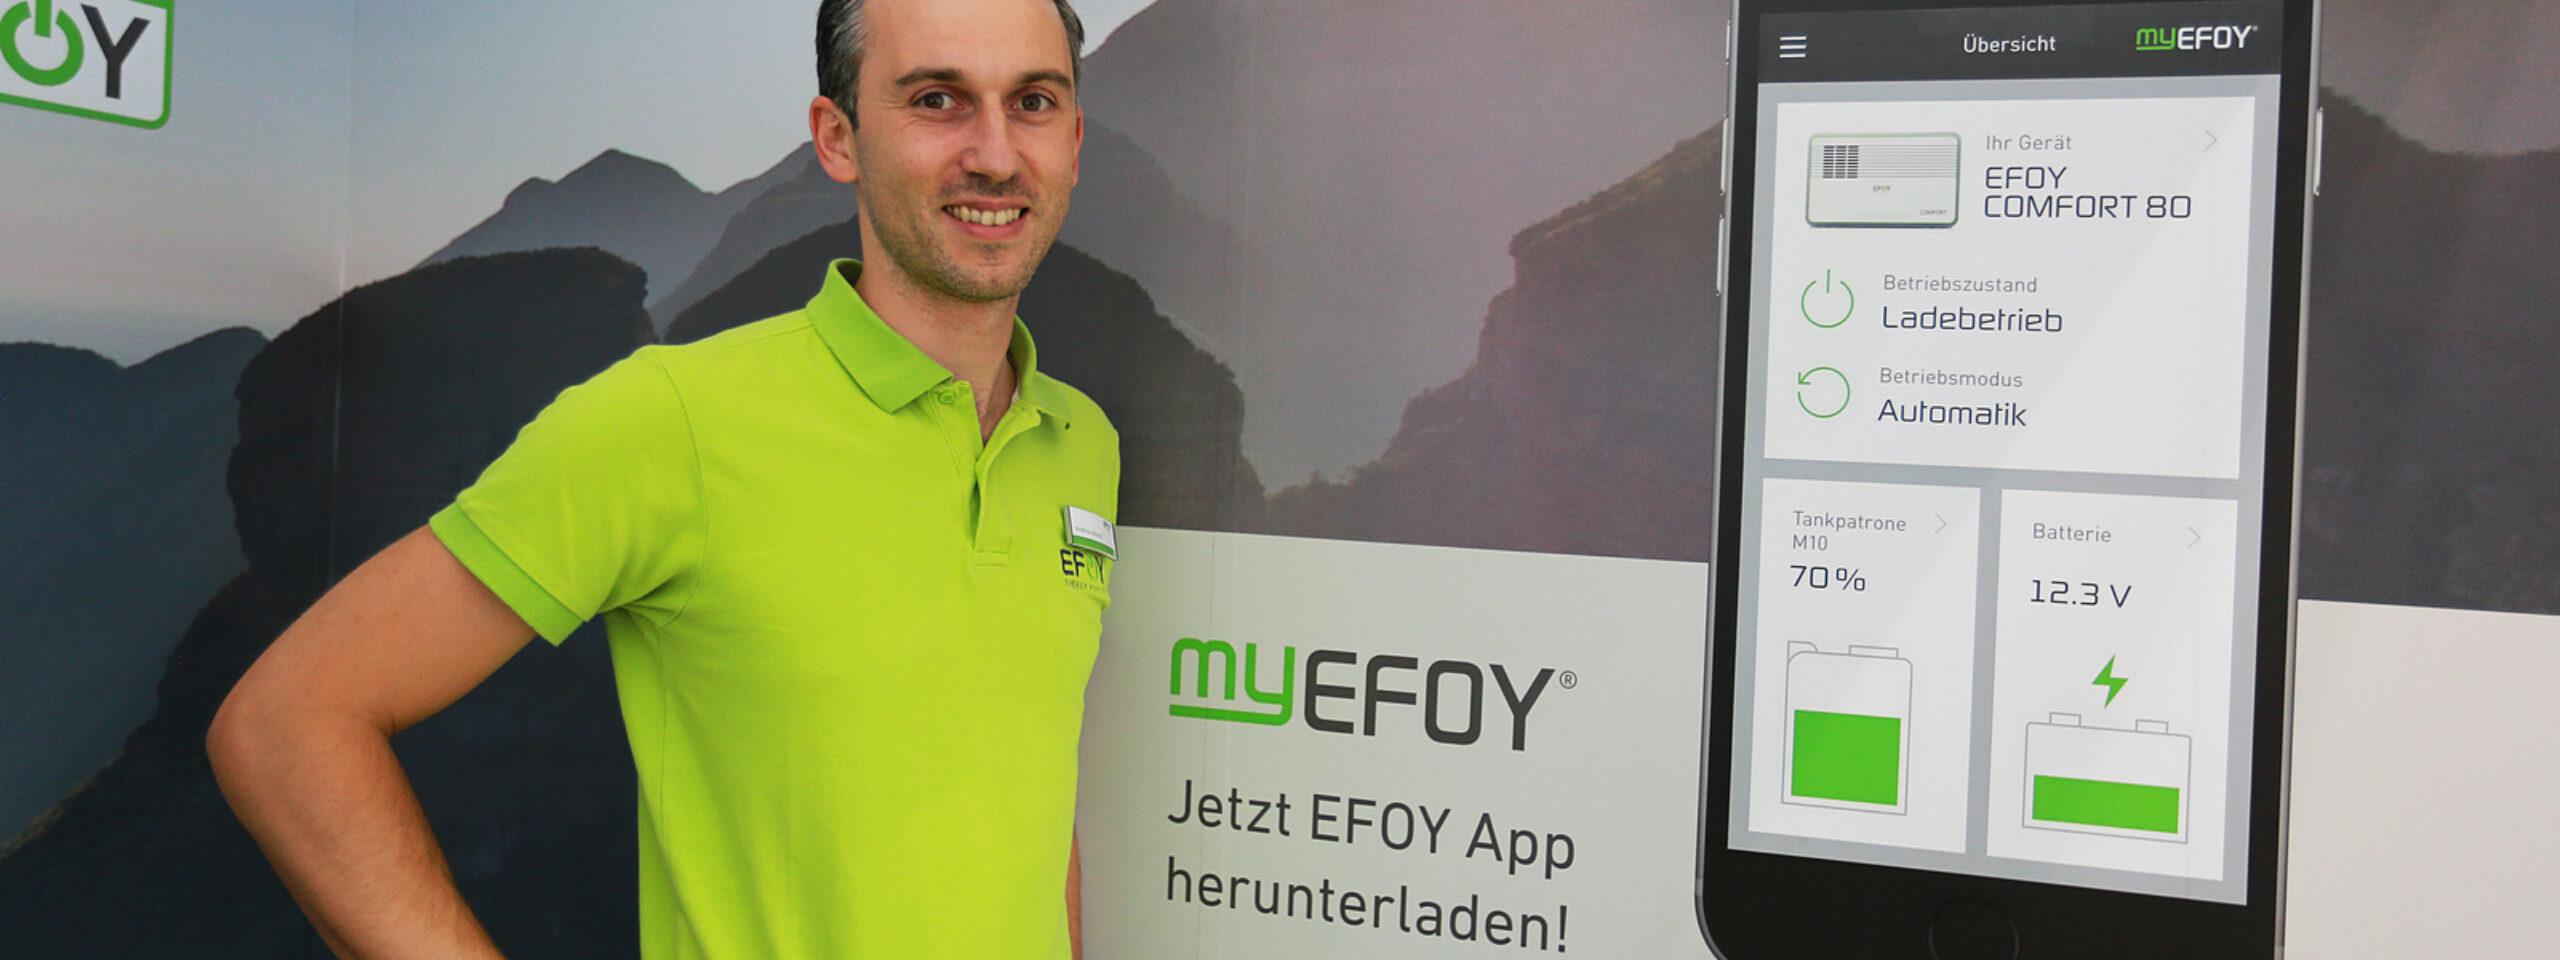 Bilde av mann ved siden av plakat av appen